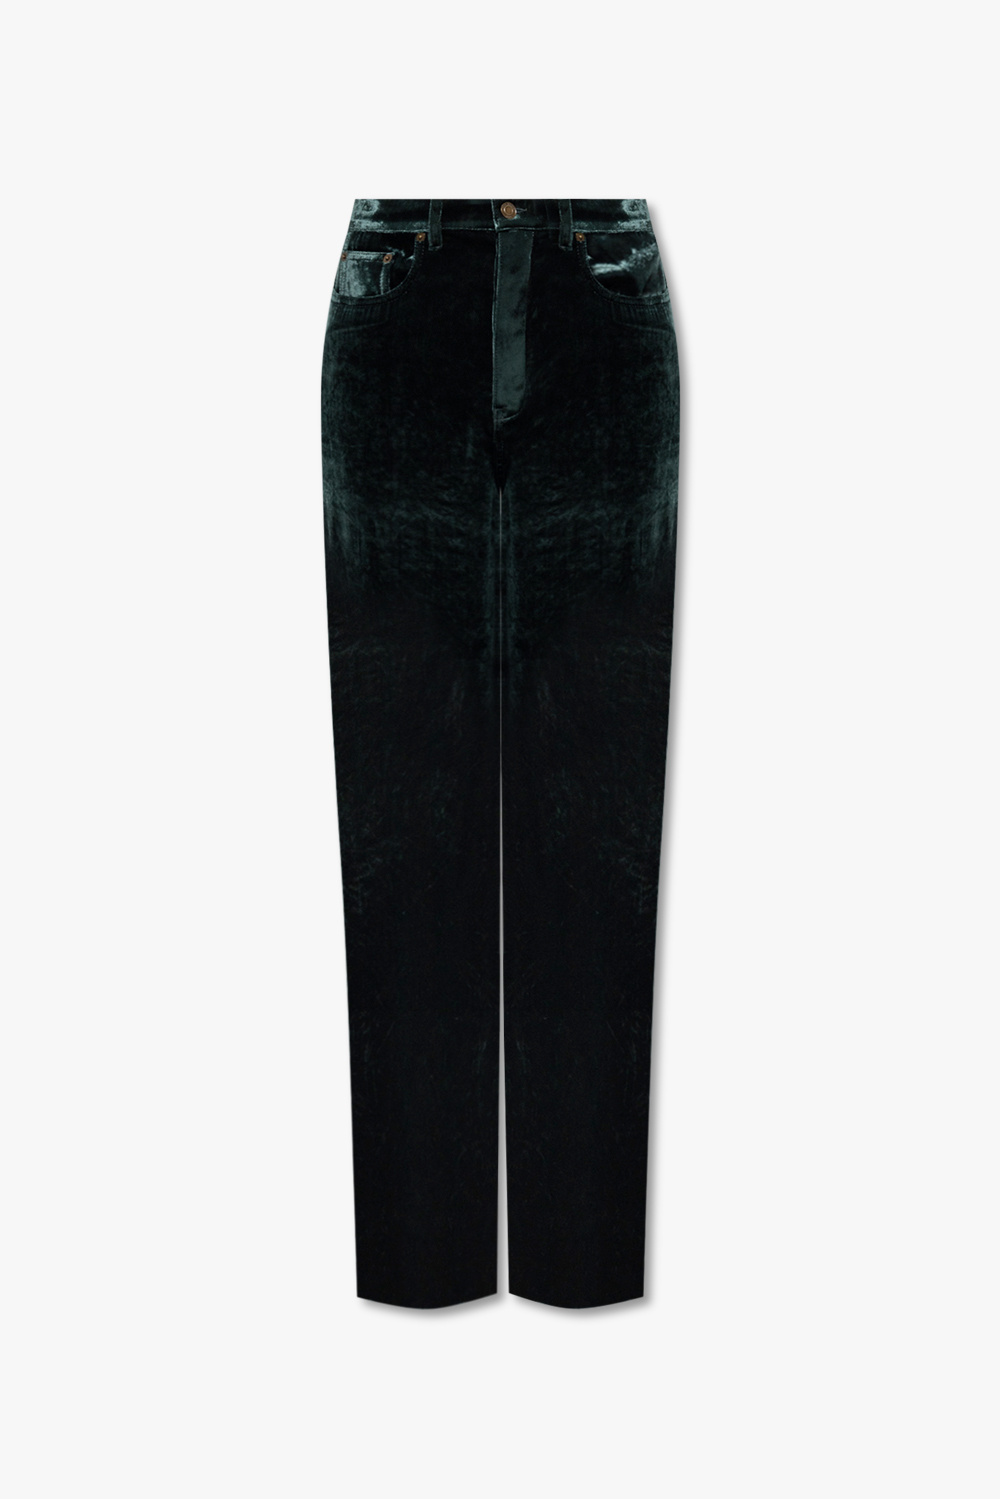 Saint Laurent Velvet trousers